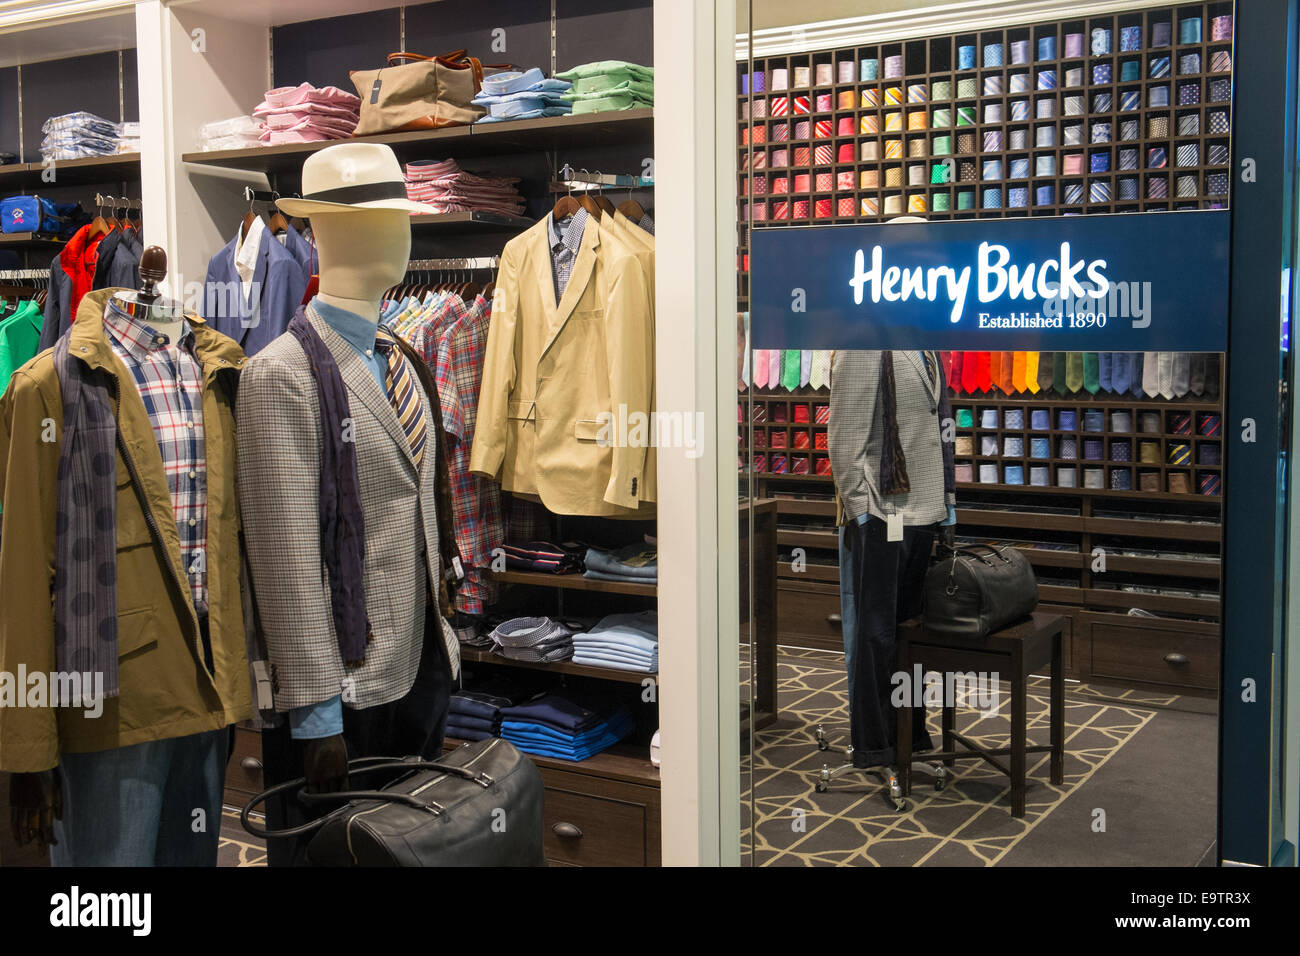 Henry Bucks Herrenbekleidung und Outfitters store Shop in Kingsford Smith Sydney Flughafen terminal 2, Australien Stockfoto